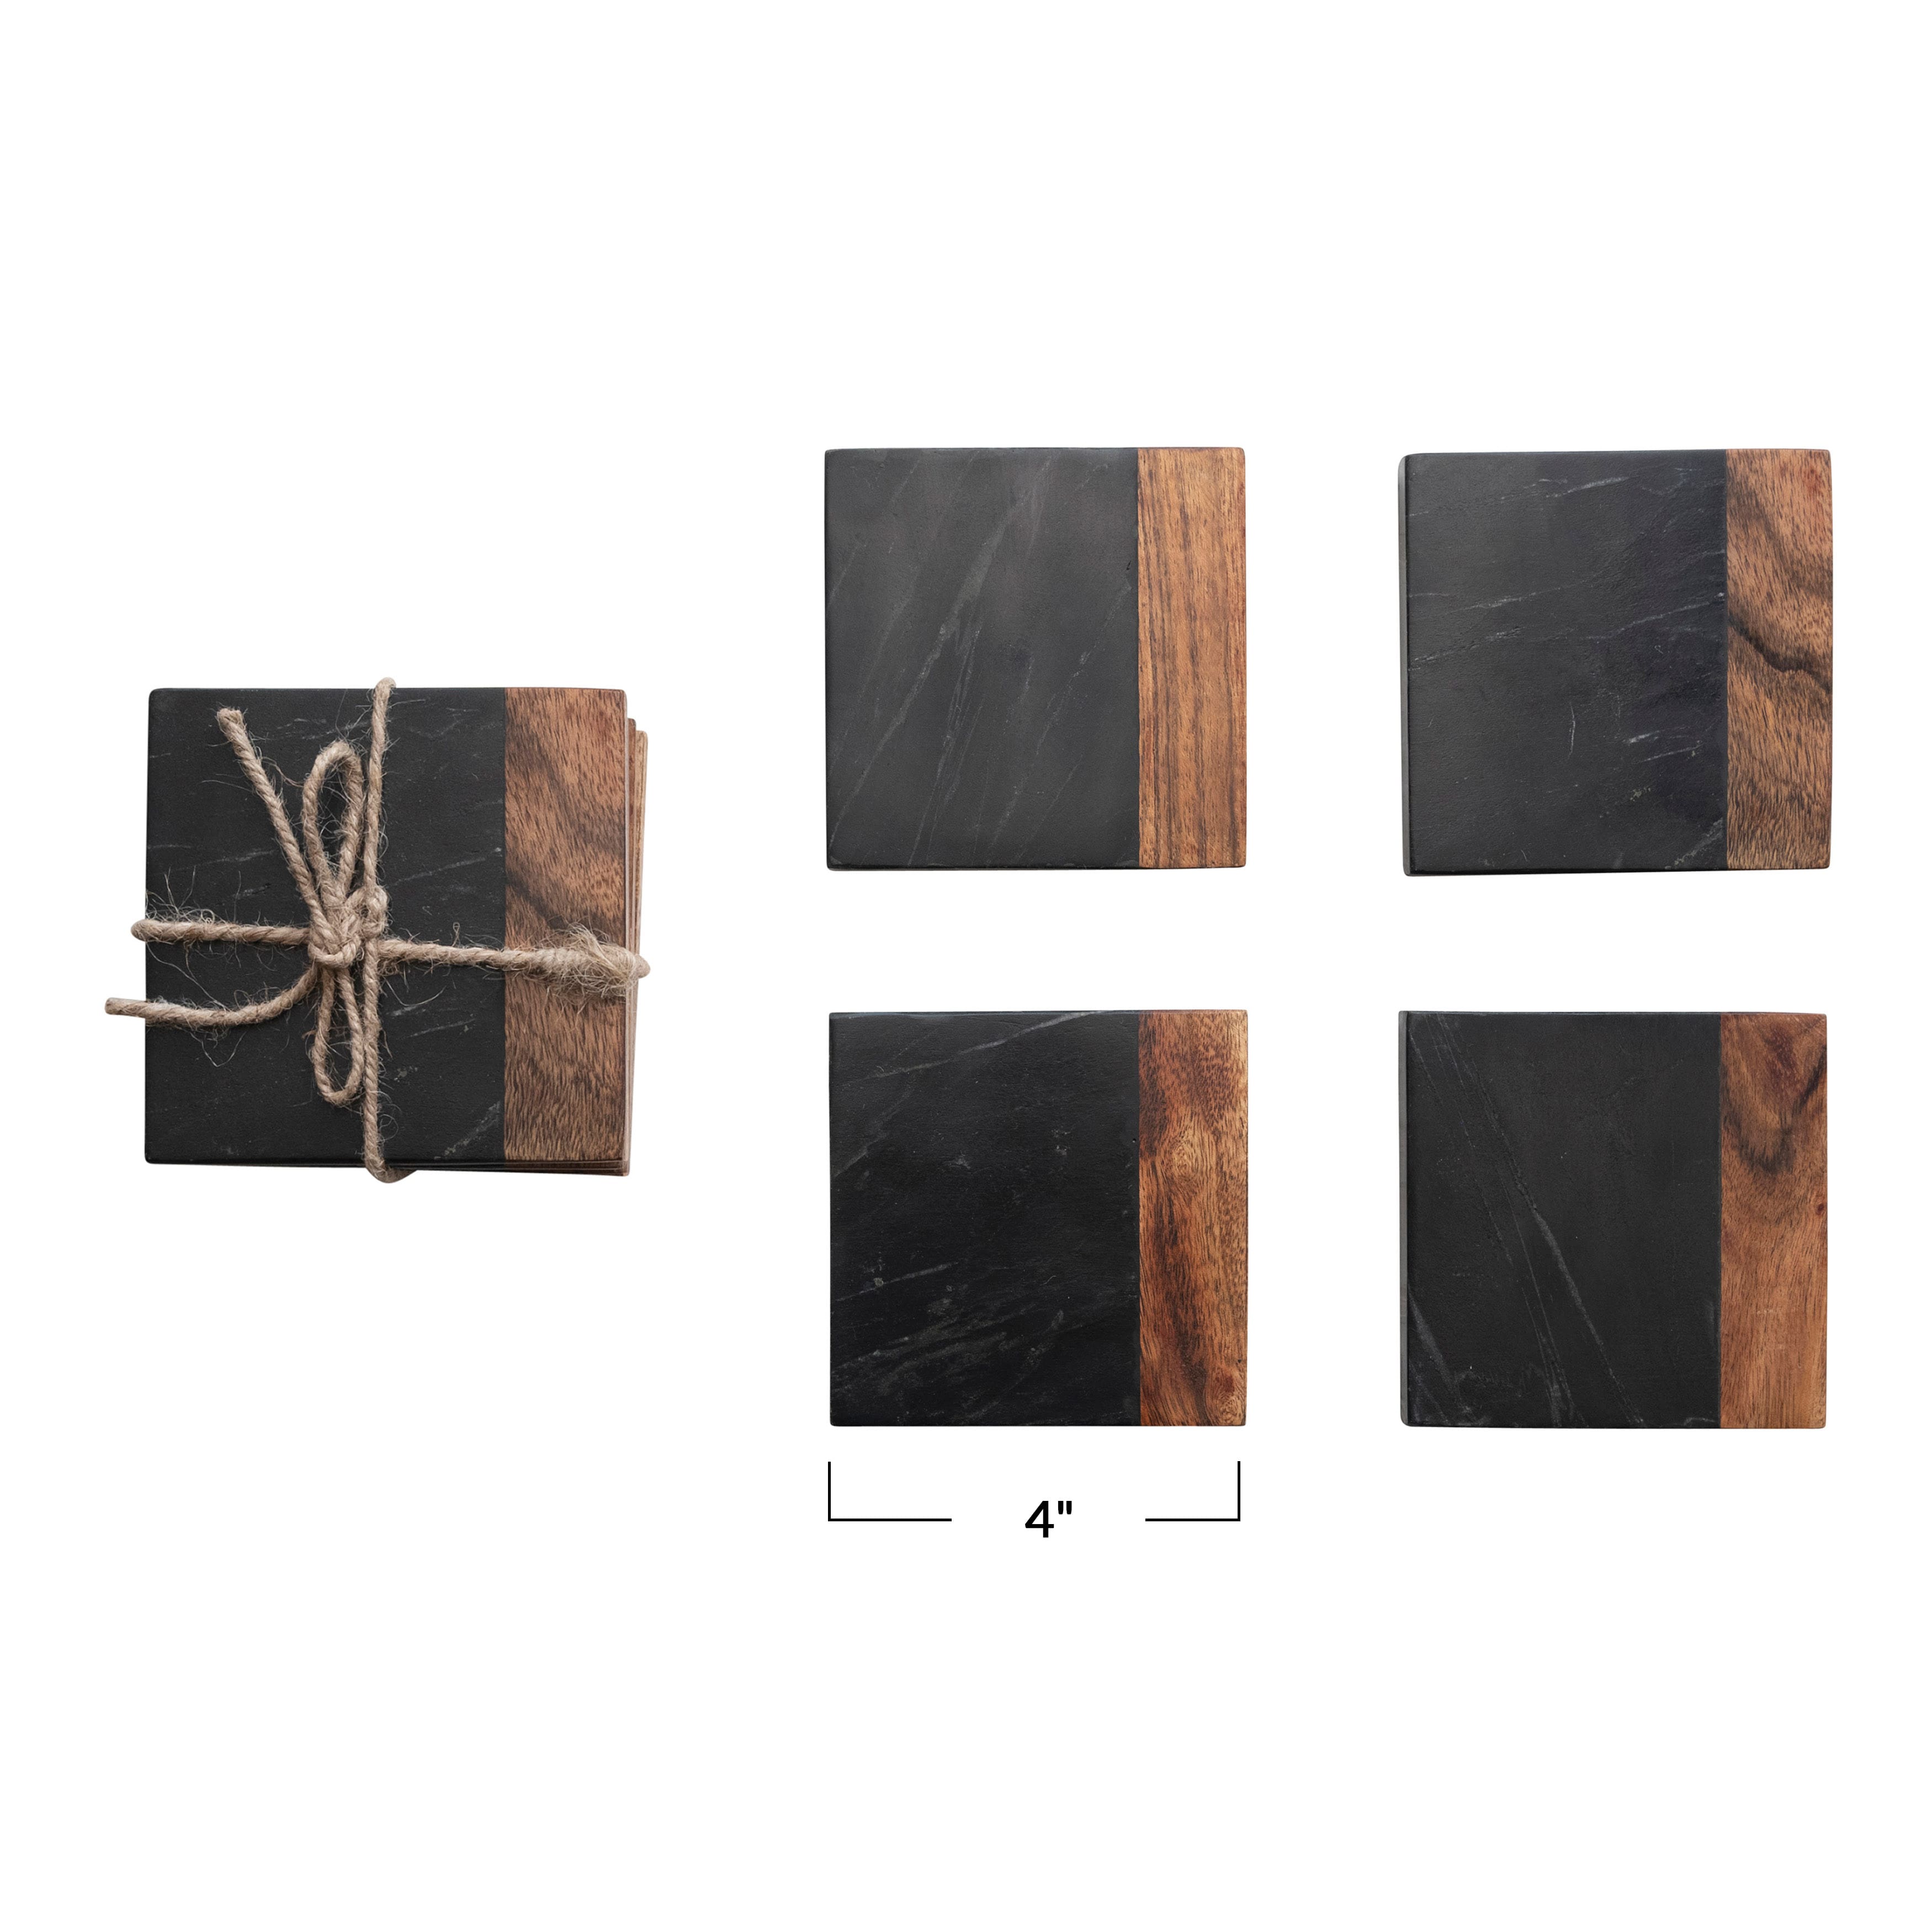 2-Tone Black and Natural Marble and Acacia Wood Coaster Set